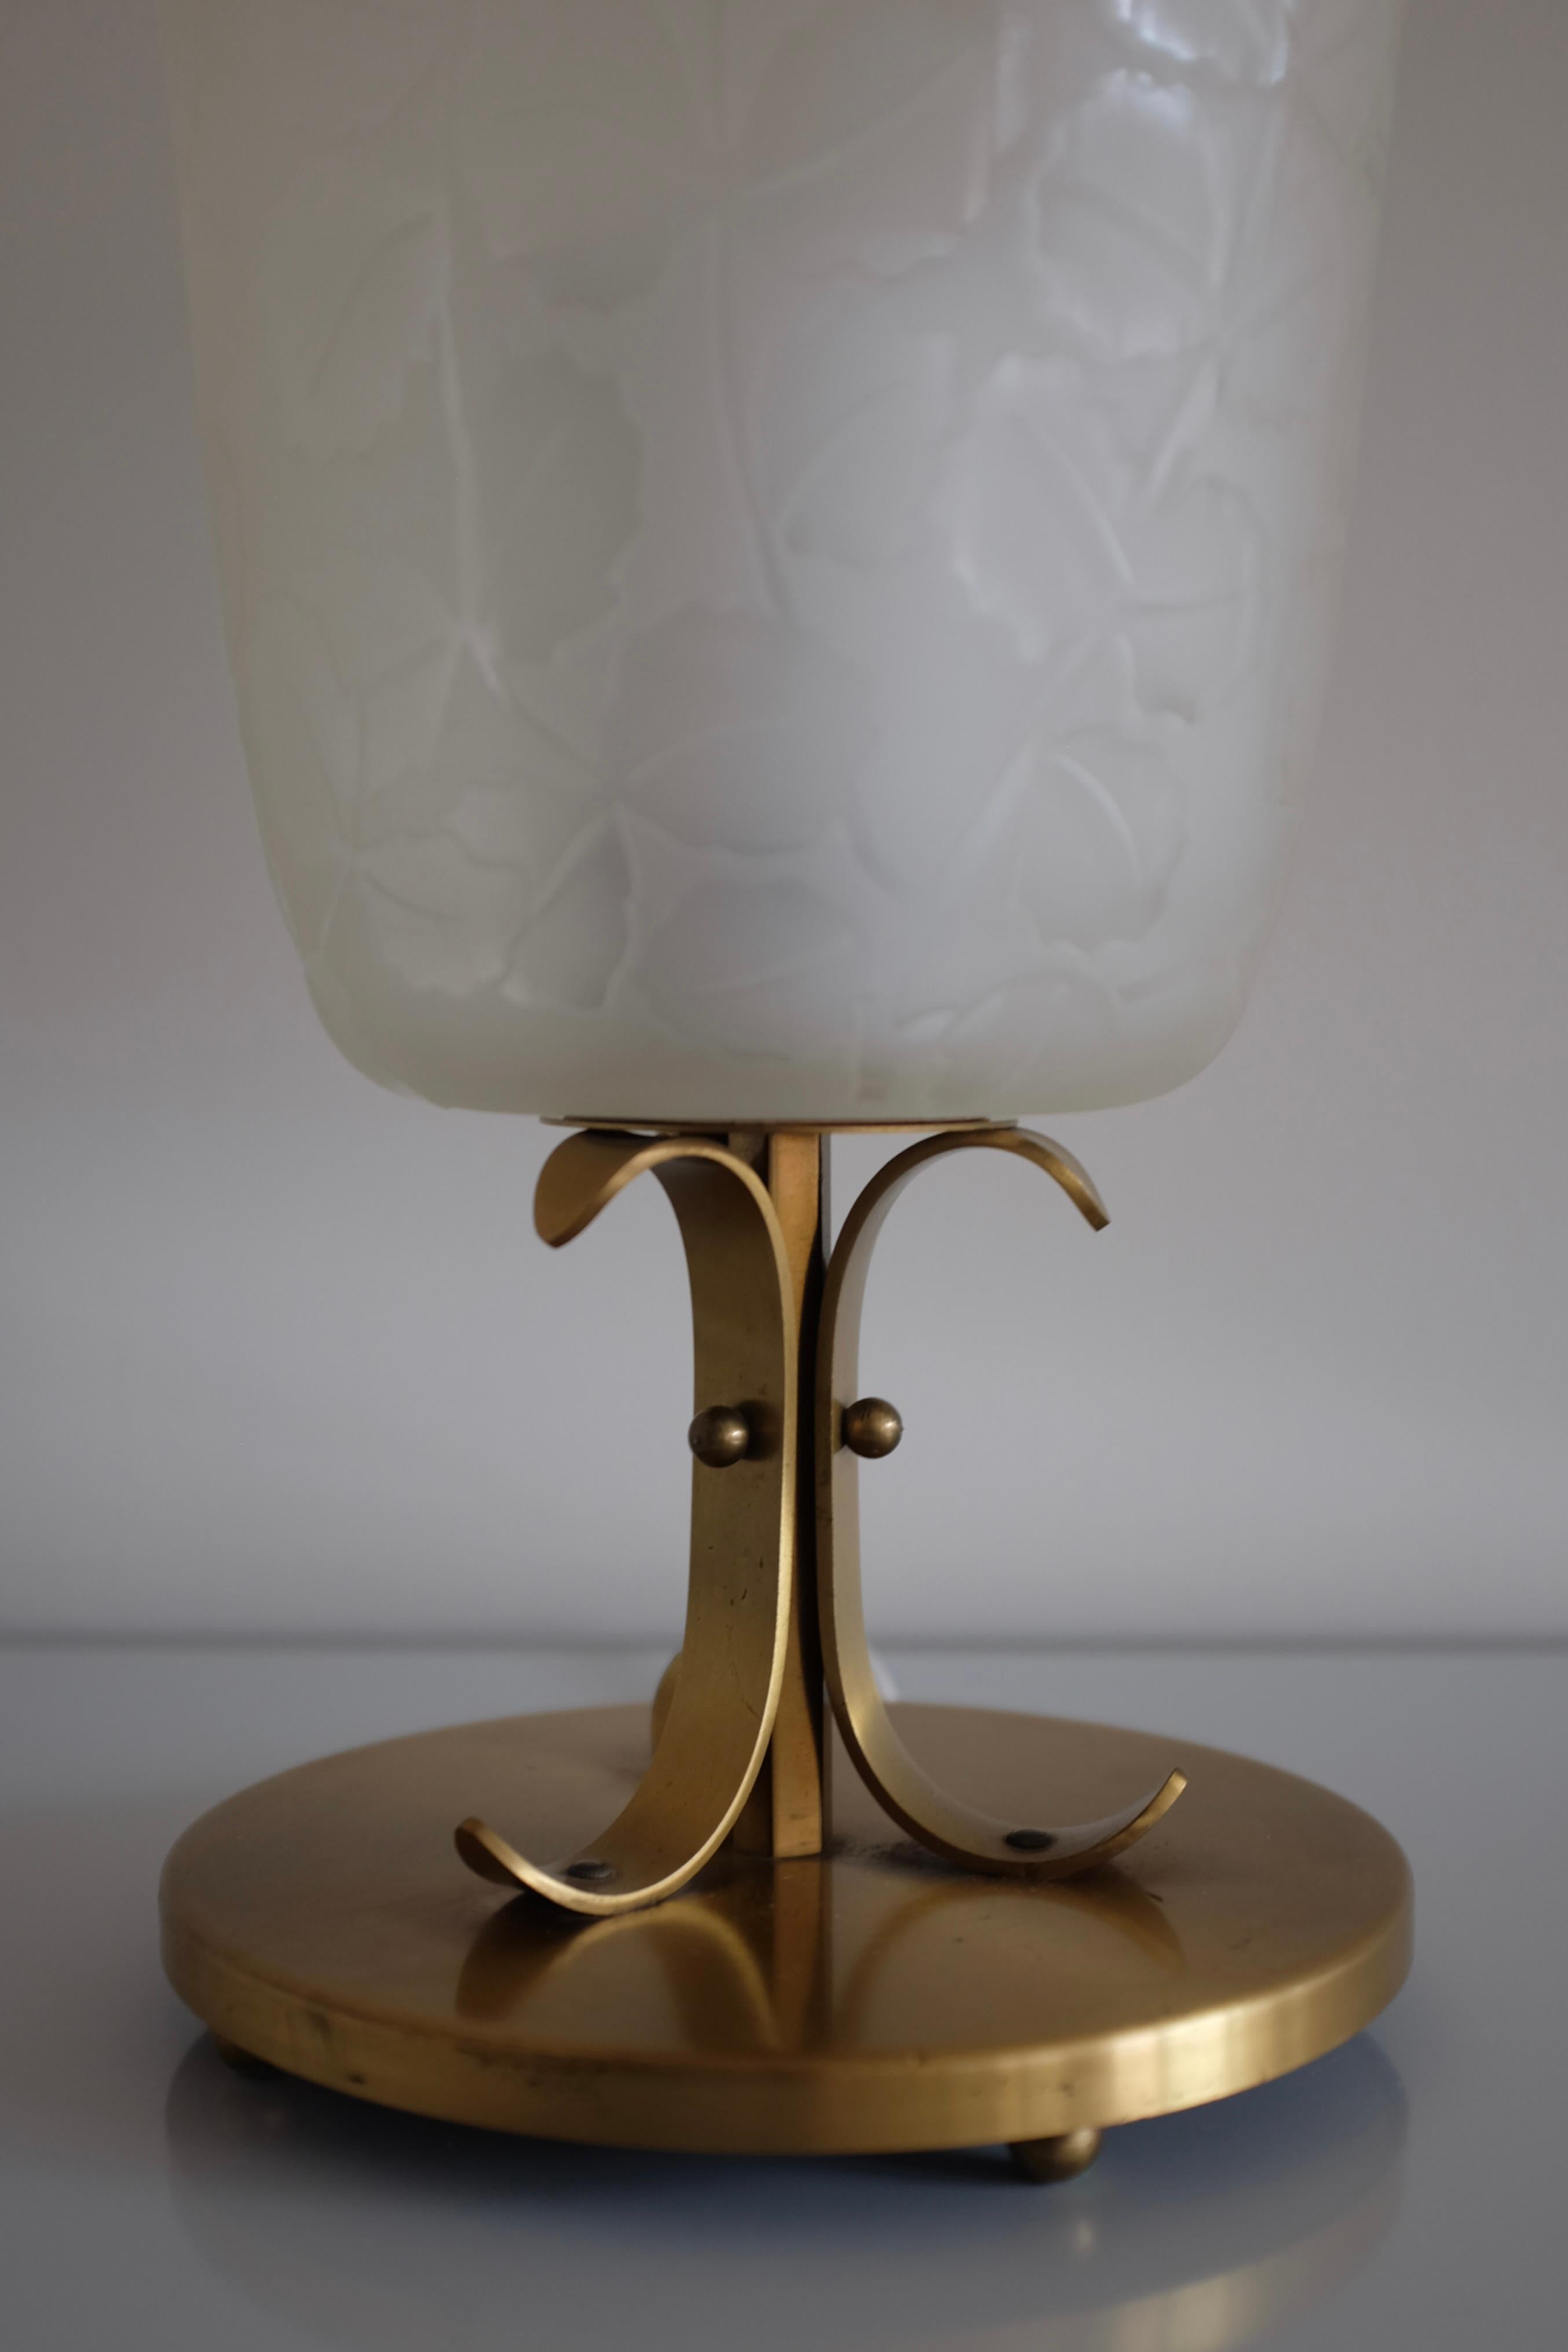 Seltene Tischlampe von Glössner & Co. aus den 1940er Jahren, Schweden. Wunderschön gravierte Blätter bedecken die Glaslaterne, die auf einem Lampenfuß aus Messing mit dekorativen geschwungenen Ornamenten steht. Glössner & Co war ein schwedischer